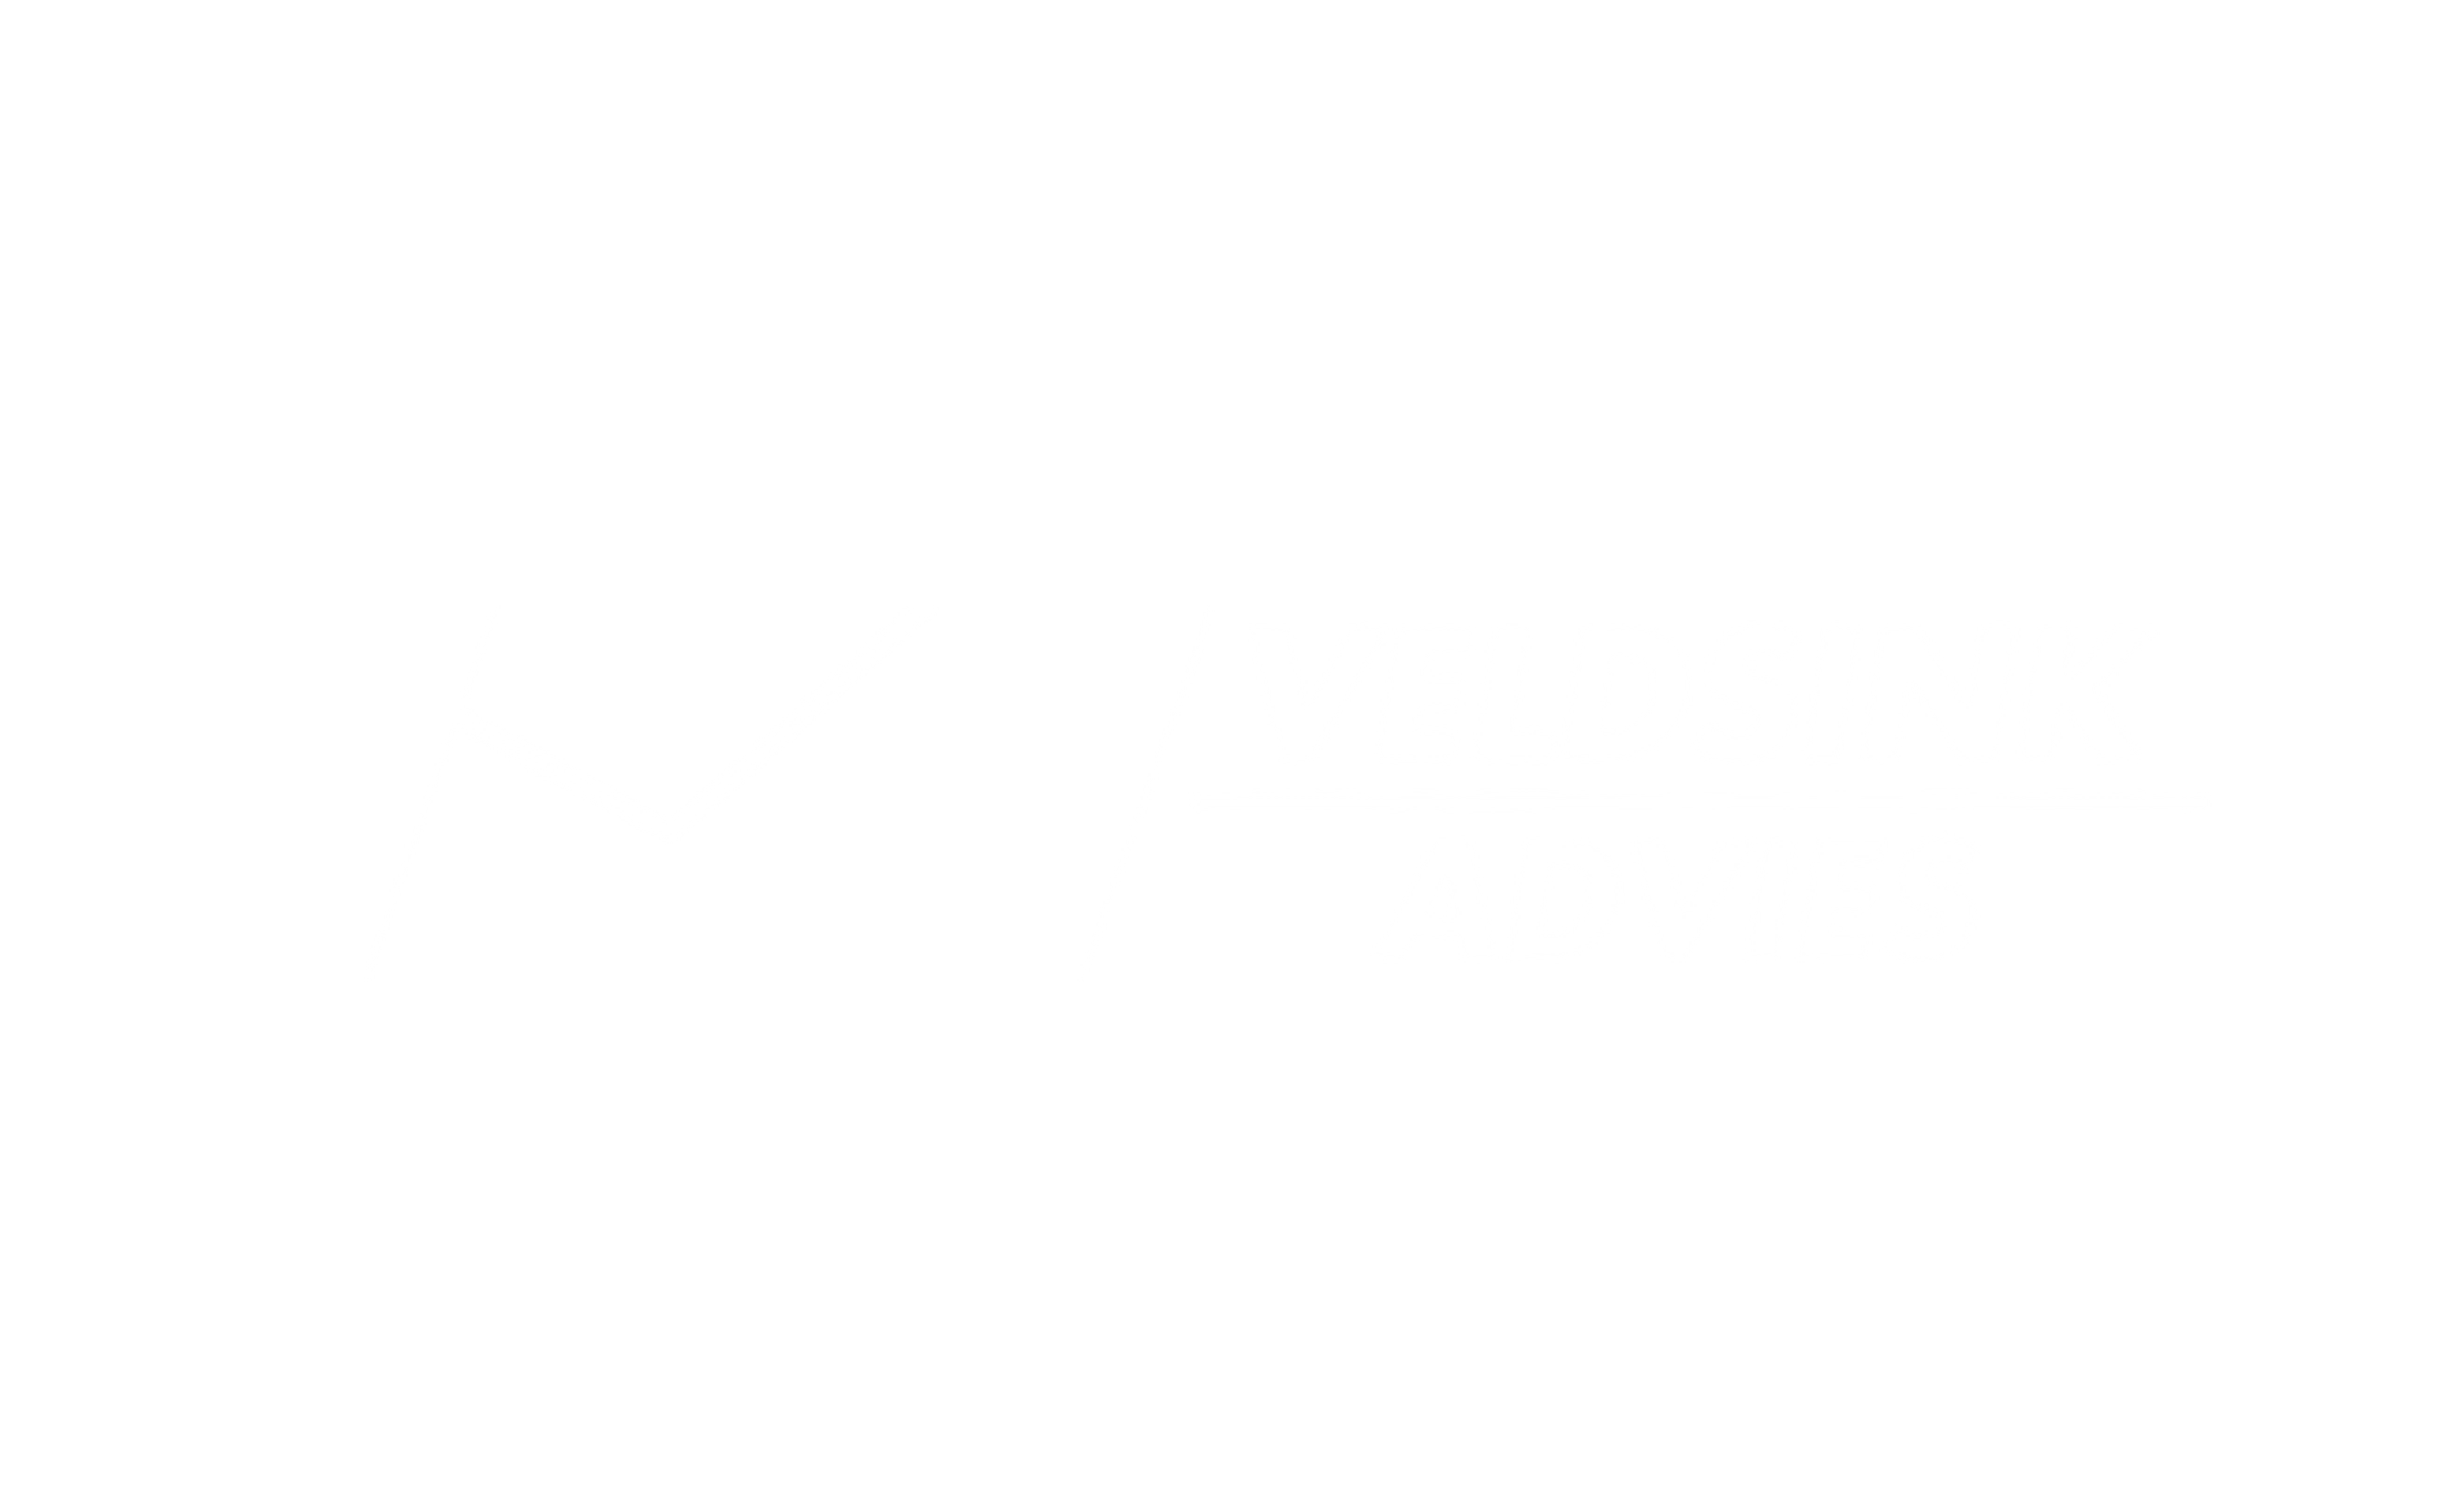 Veldsink advies logo